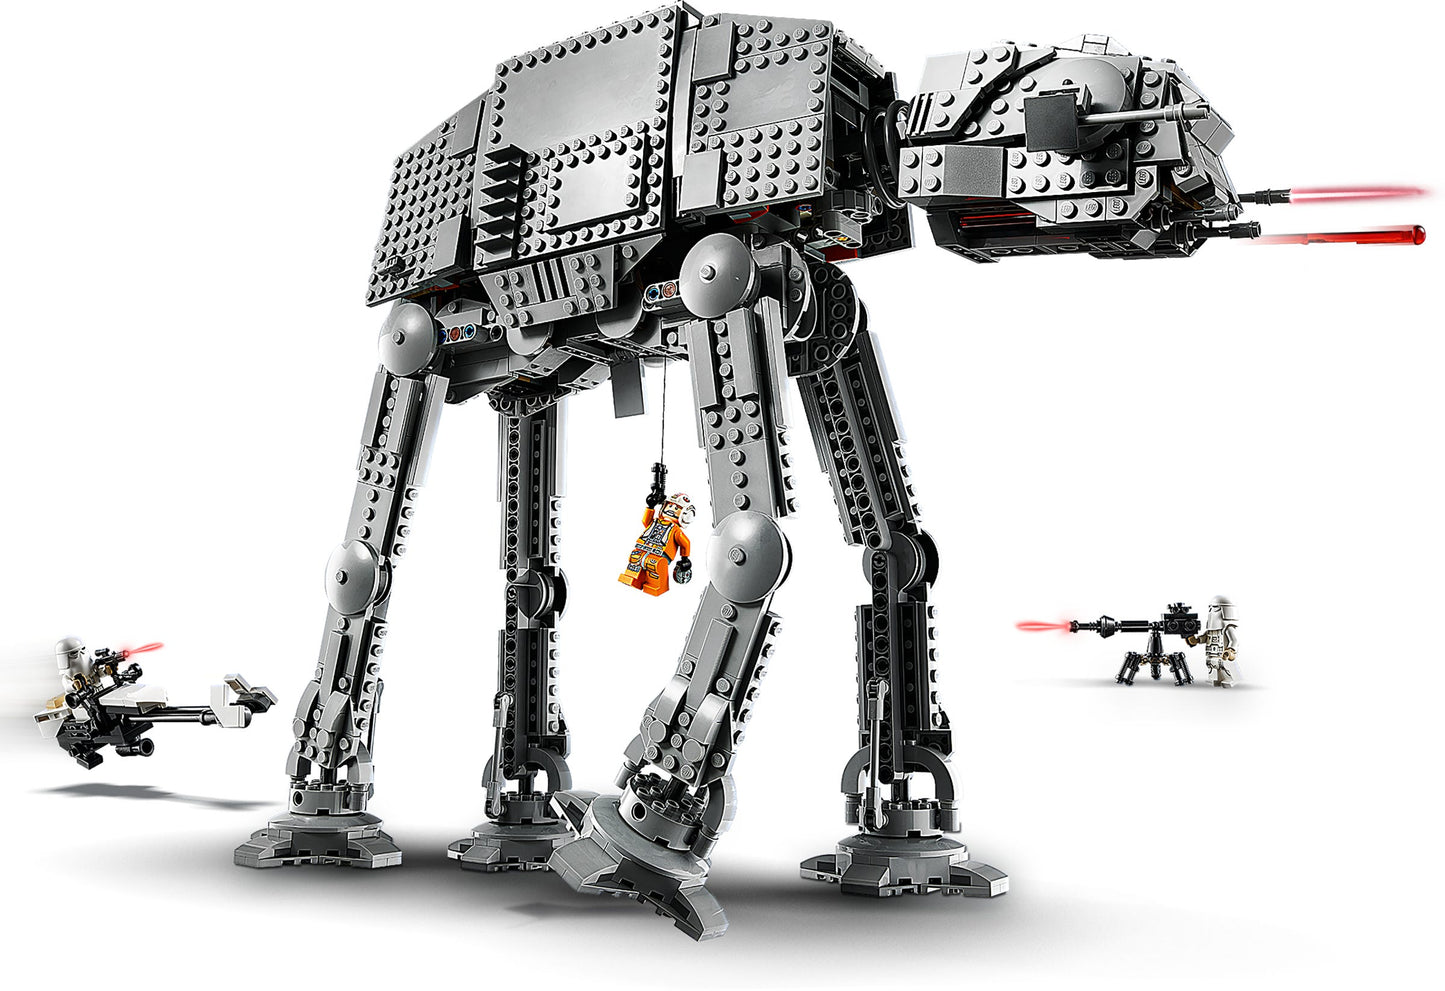 LEGO Star Wars AT-AT Star Wars 75288